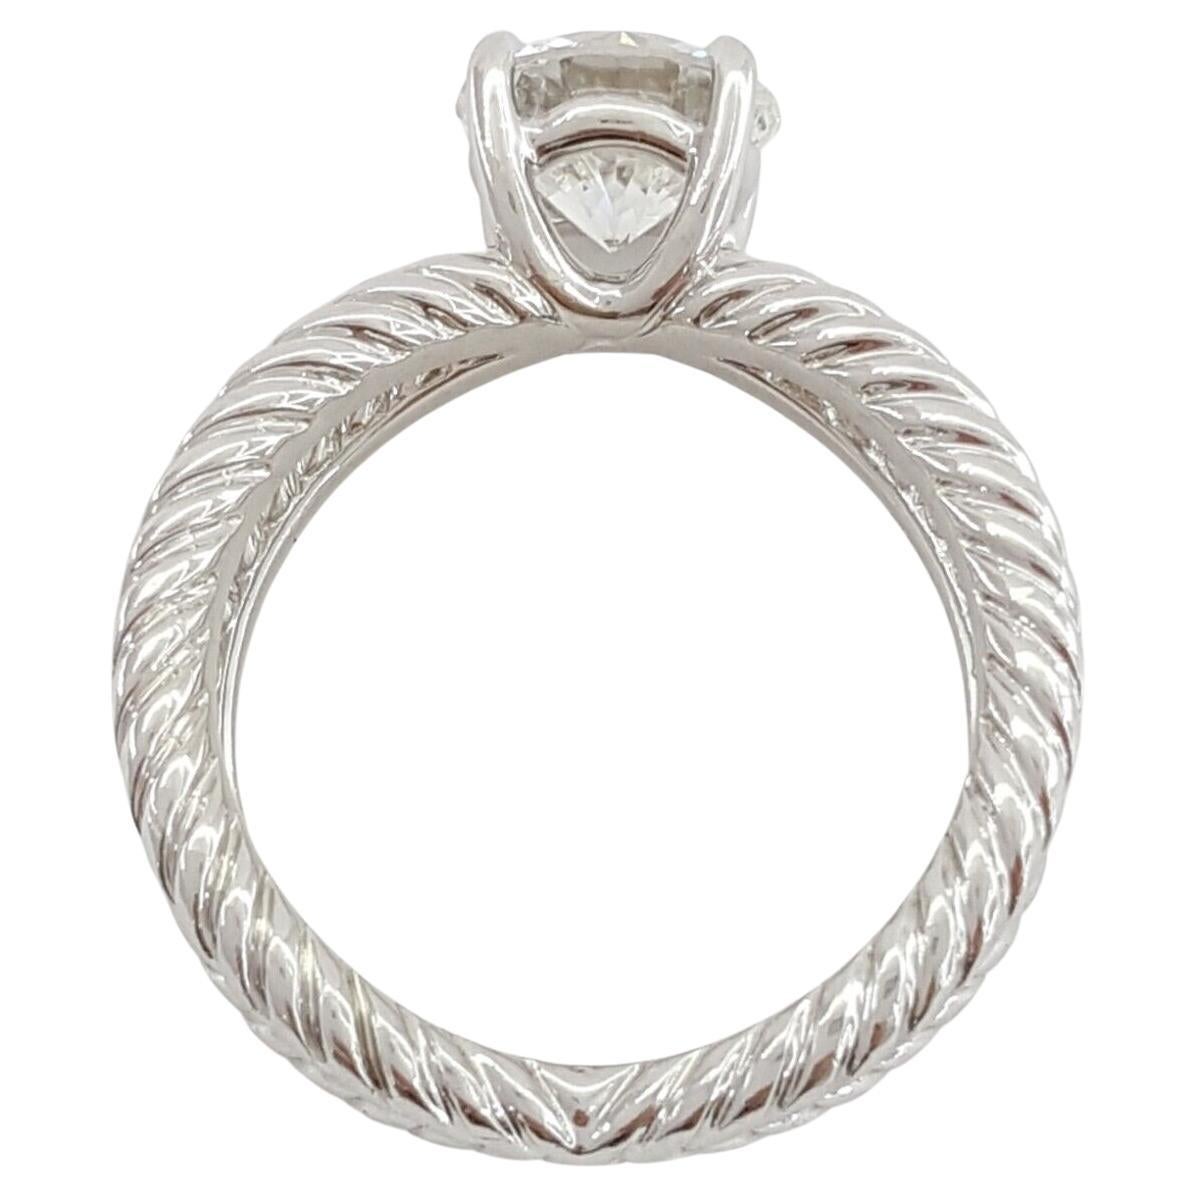 david yurman engagement rings price